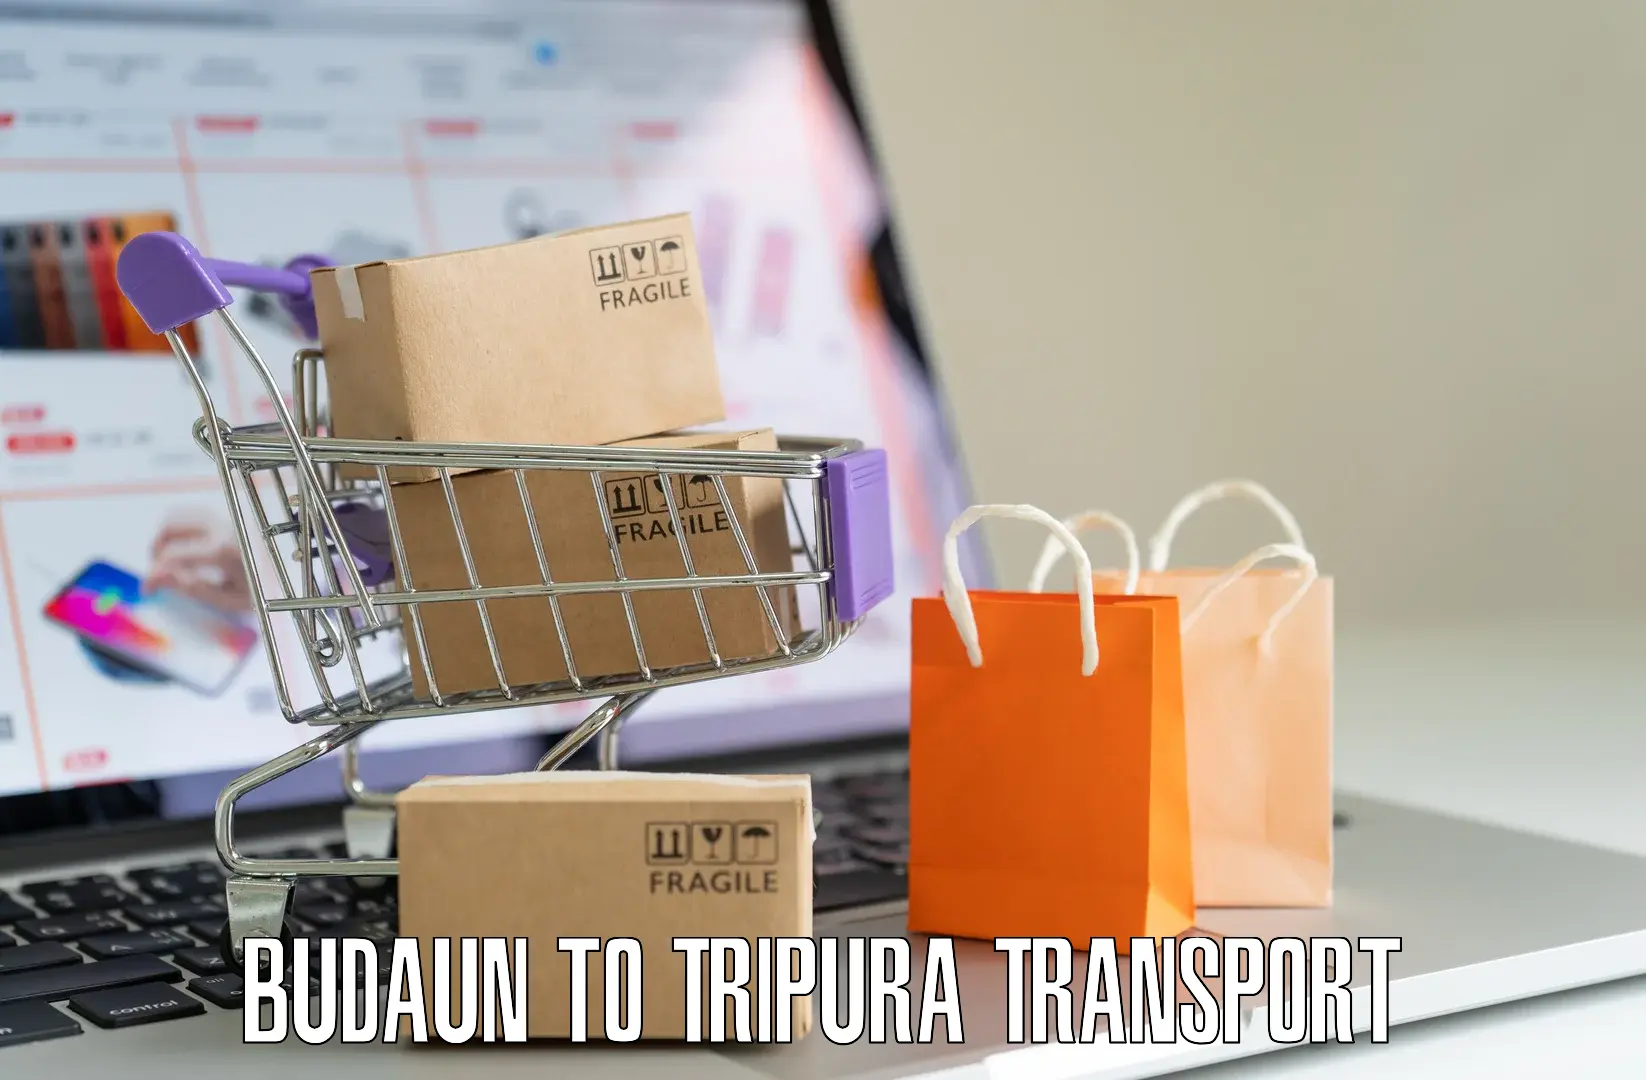 Nearby transport service Budaun to South Tripura